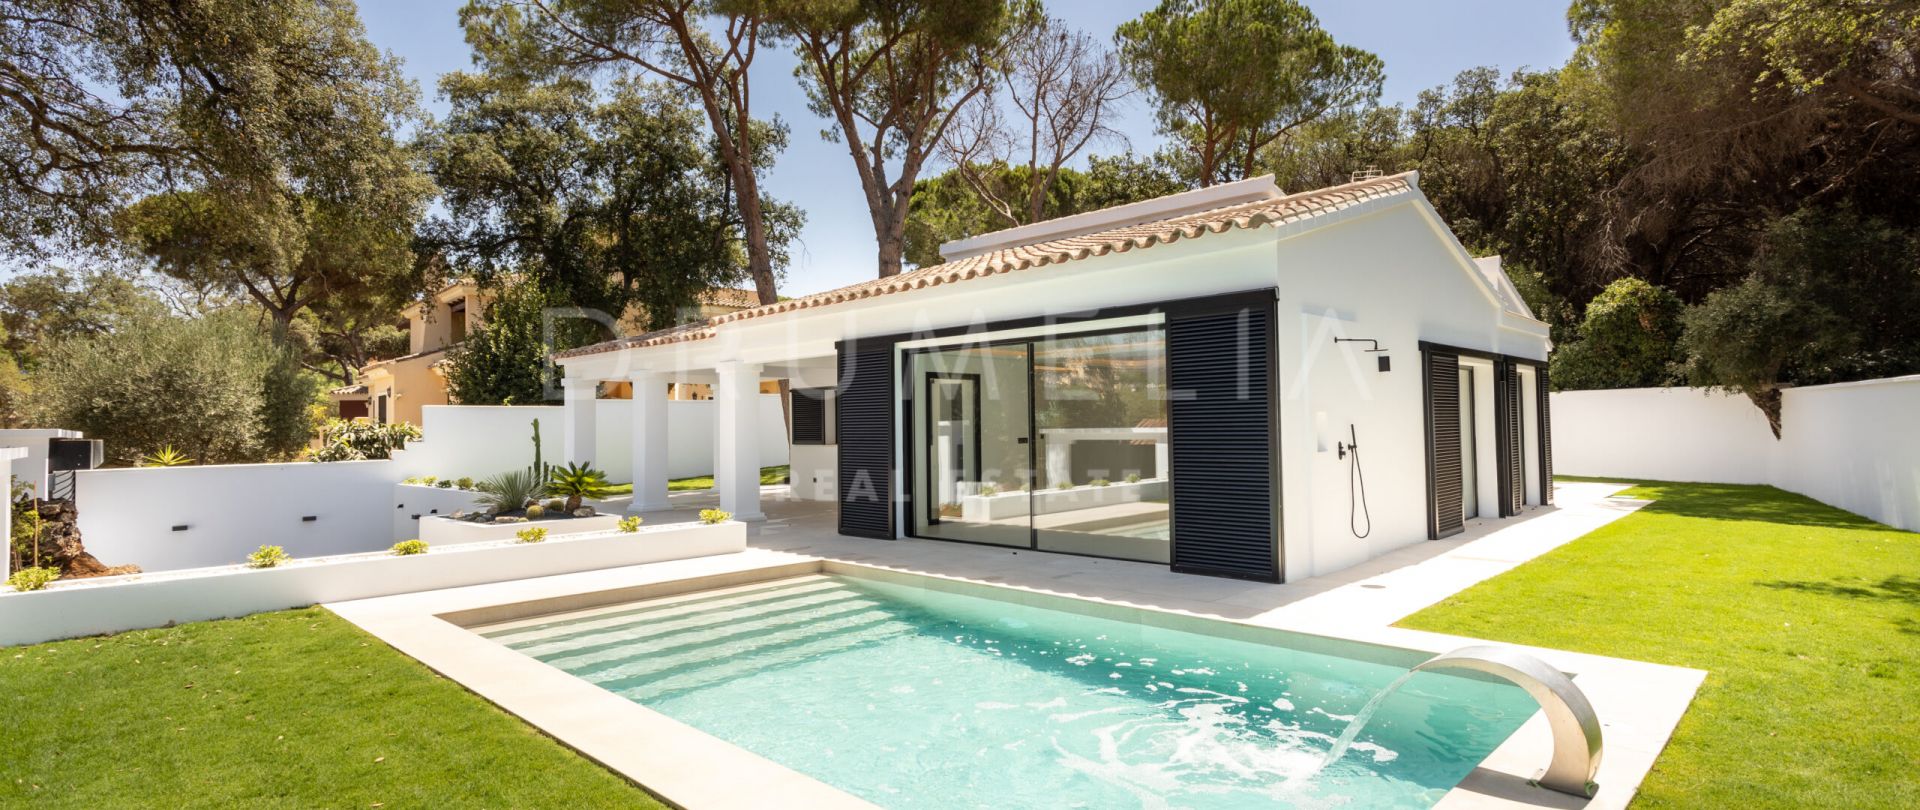 Charmante mediterrane luxe villa dicht bij het strand in Elviria, ten oosten van Marbella.